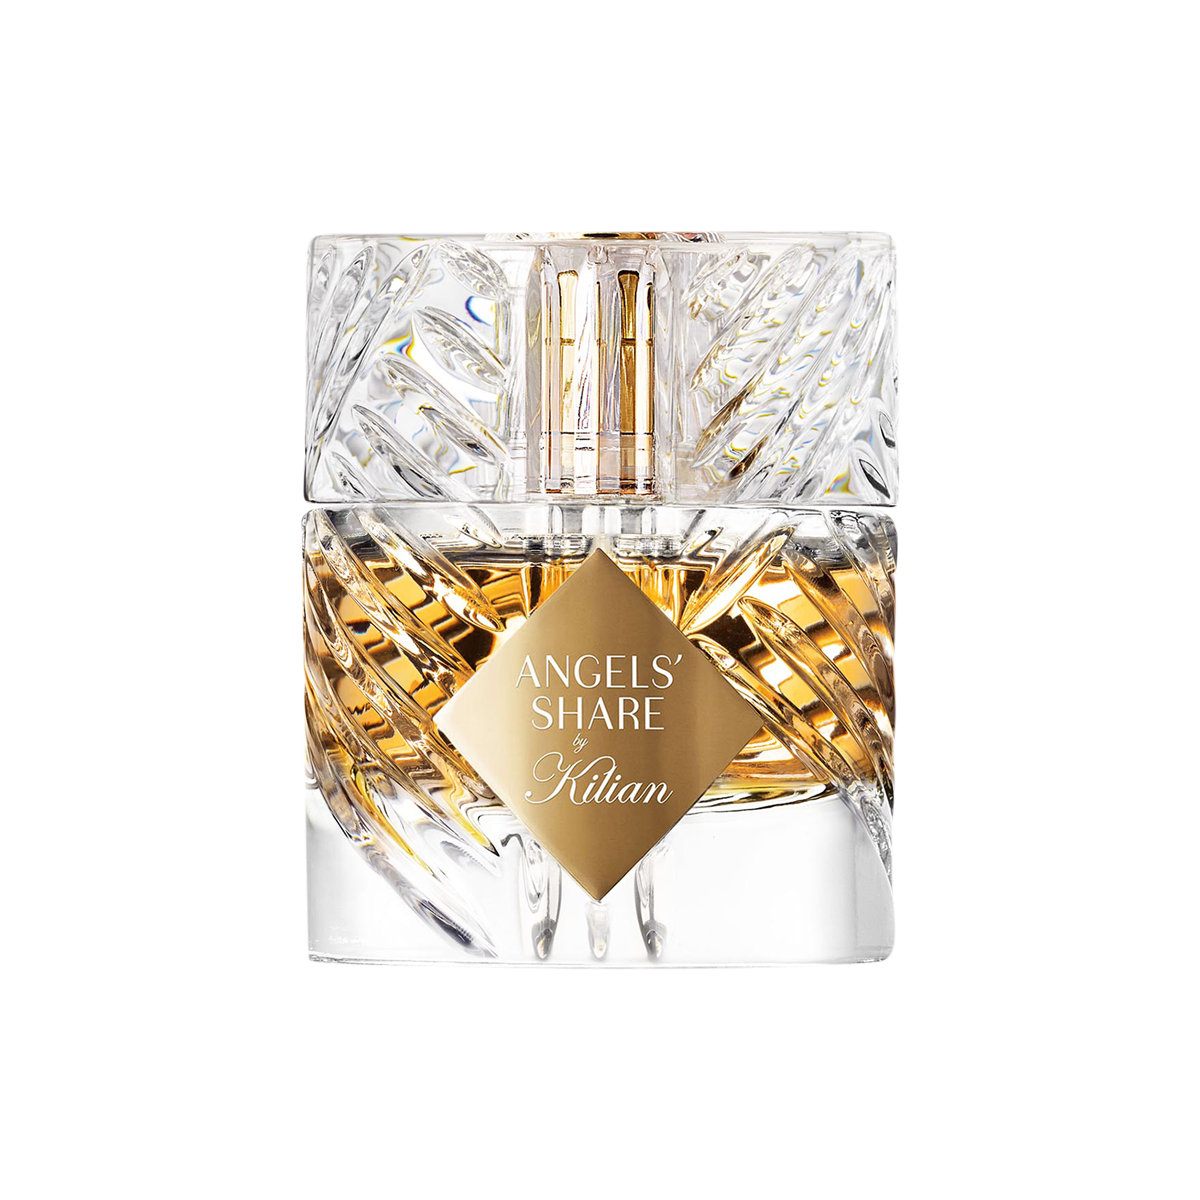 Kilian Paris - Angels Share Eau de Parfum